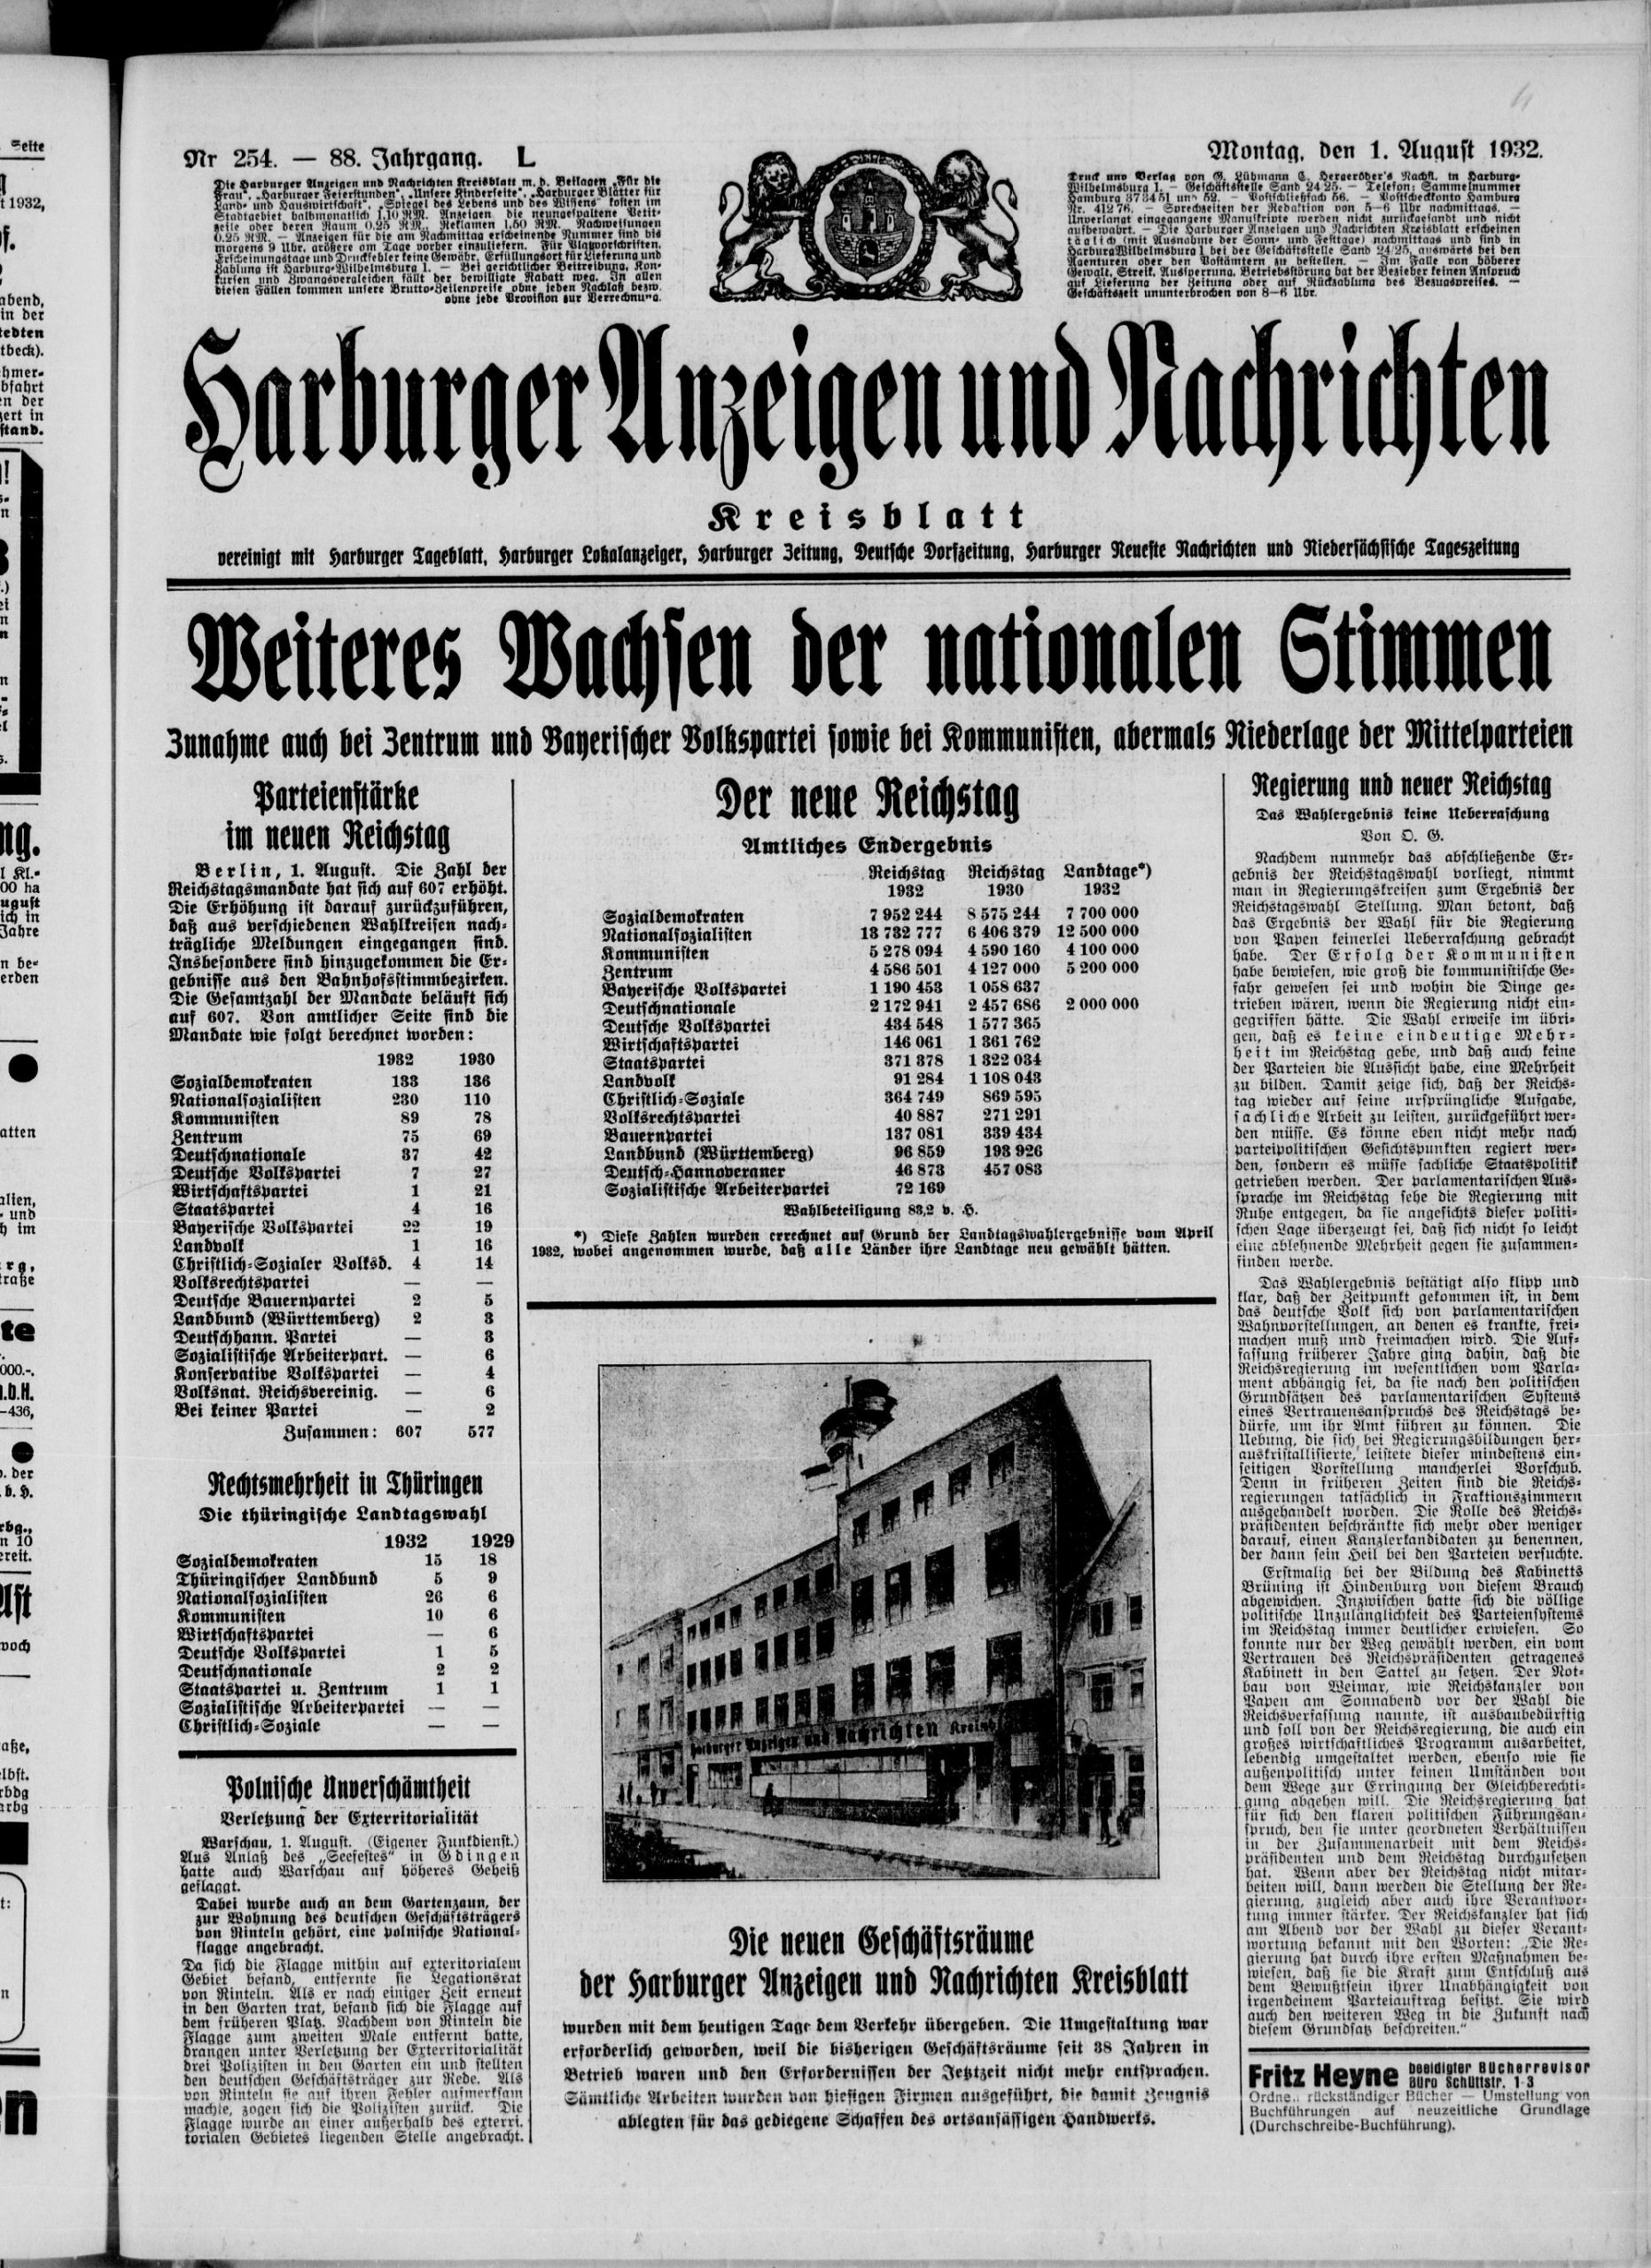 Harburger Anzeigen und Nachrichten 1. August 1932 (Deutsches Zeitungsportal)